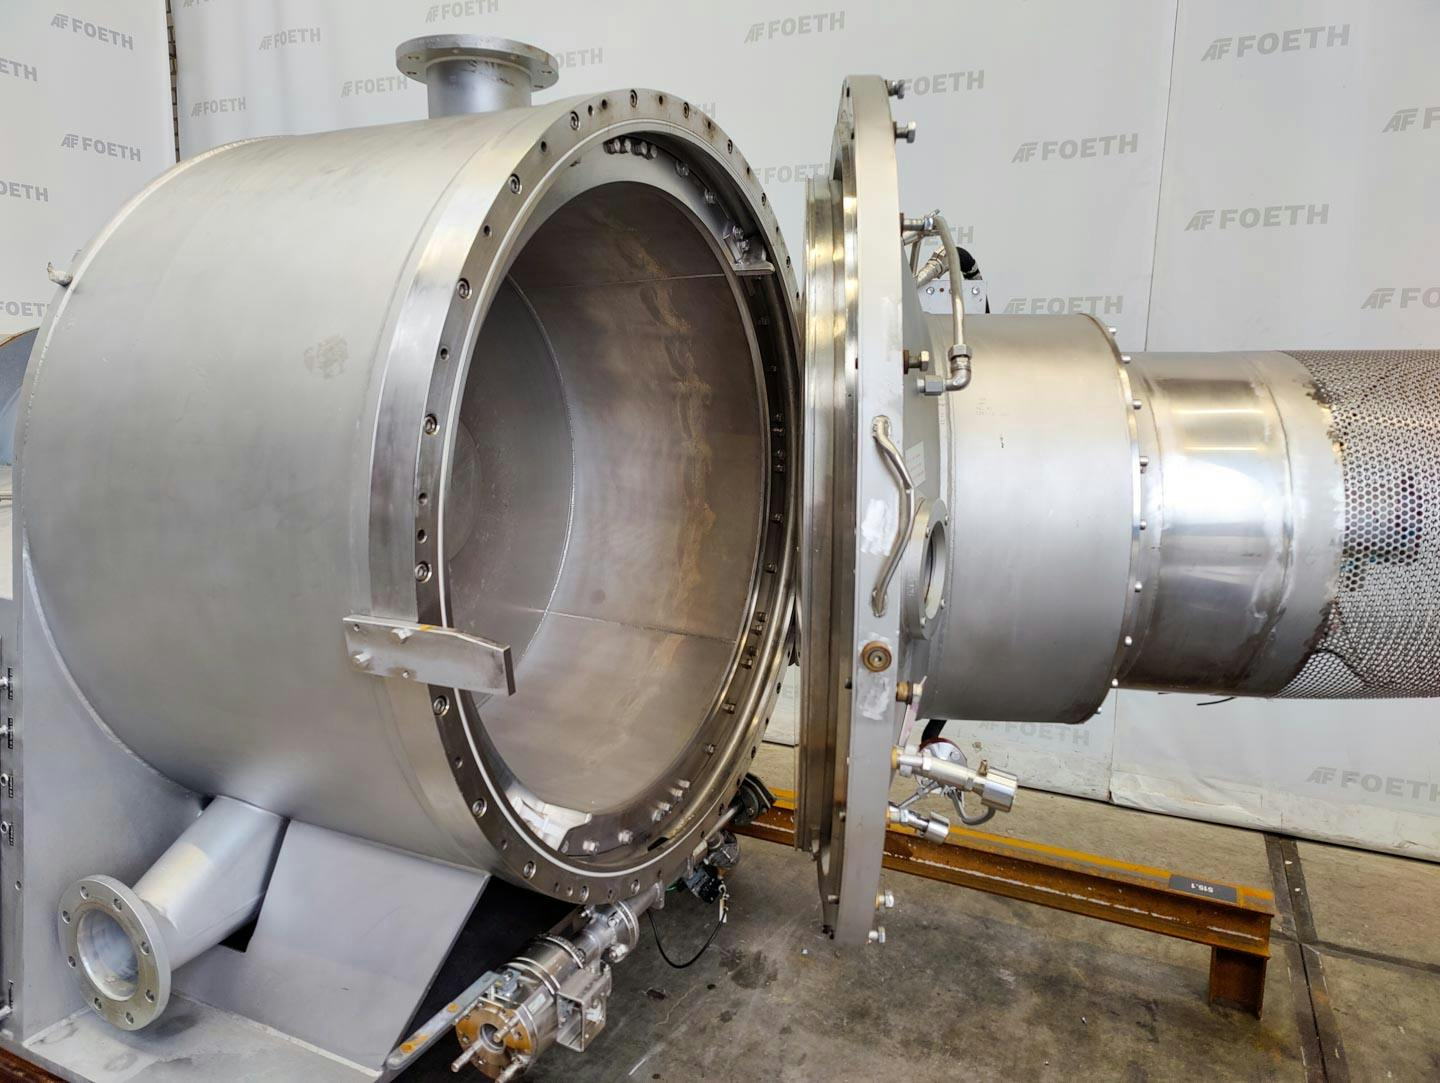 Fima Process Trockner TZT-1300 - centrifuge dryer - Basket centrifuge - image 7